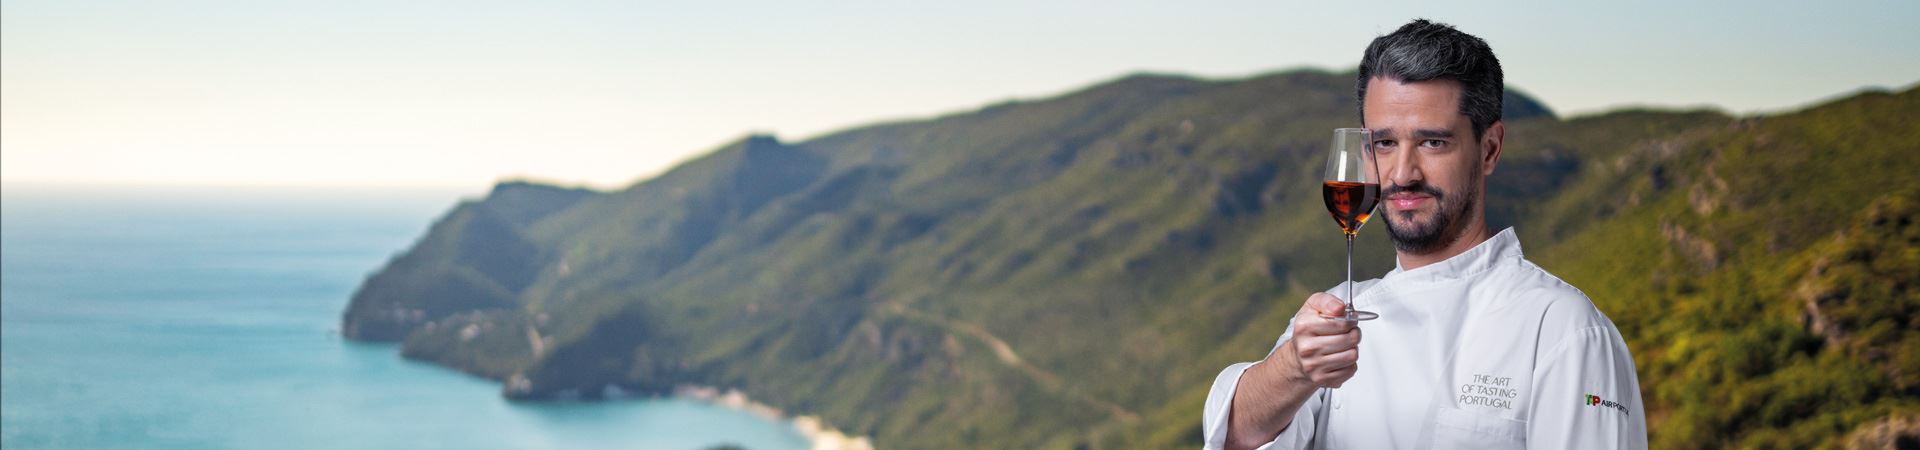 Изображение на фоне зеленых гор полуострова Сетубал. На переднем плане, справа от снимка, шеф-повар André Cruz держит бокал Moscatel de Setúbal правой рукой на уровне лица, частично закрывая правую часть лица. 